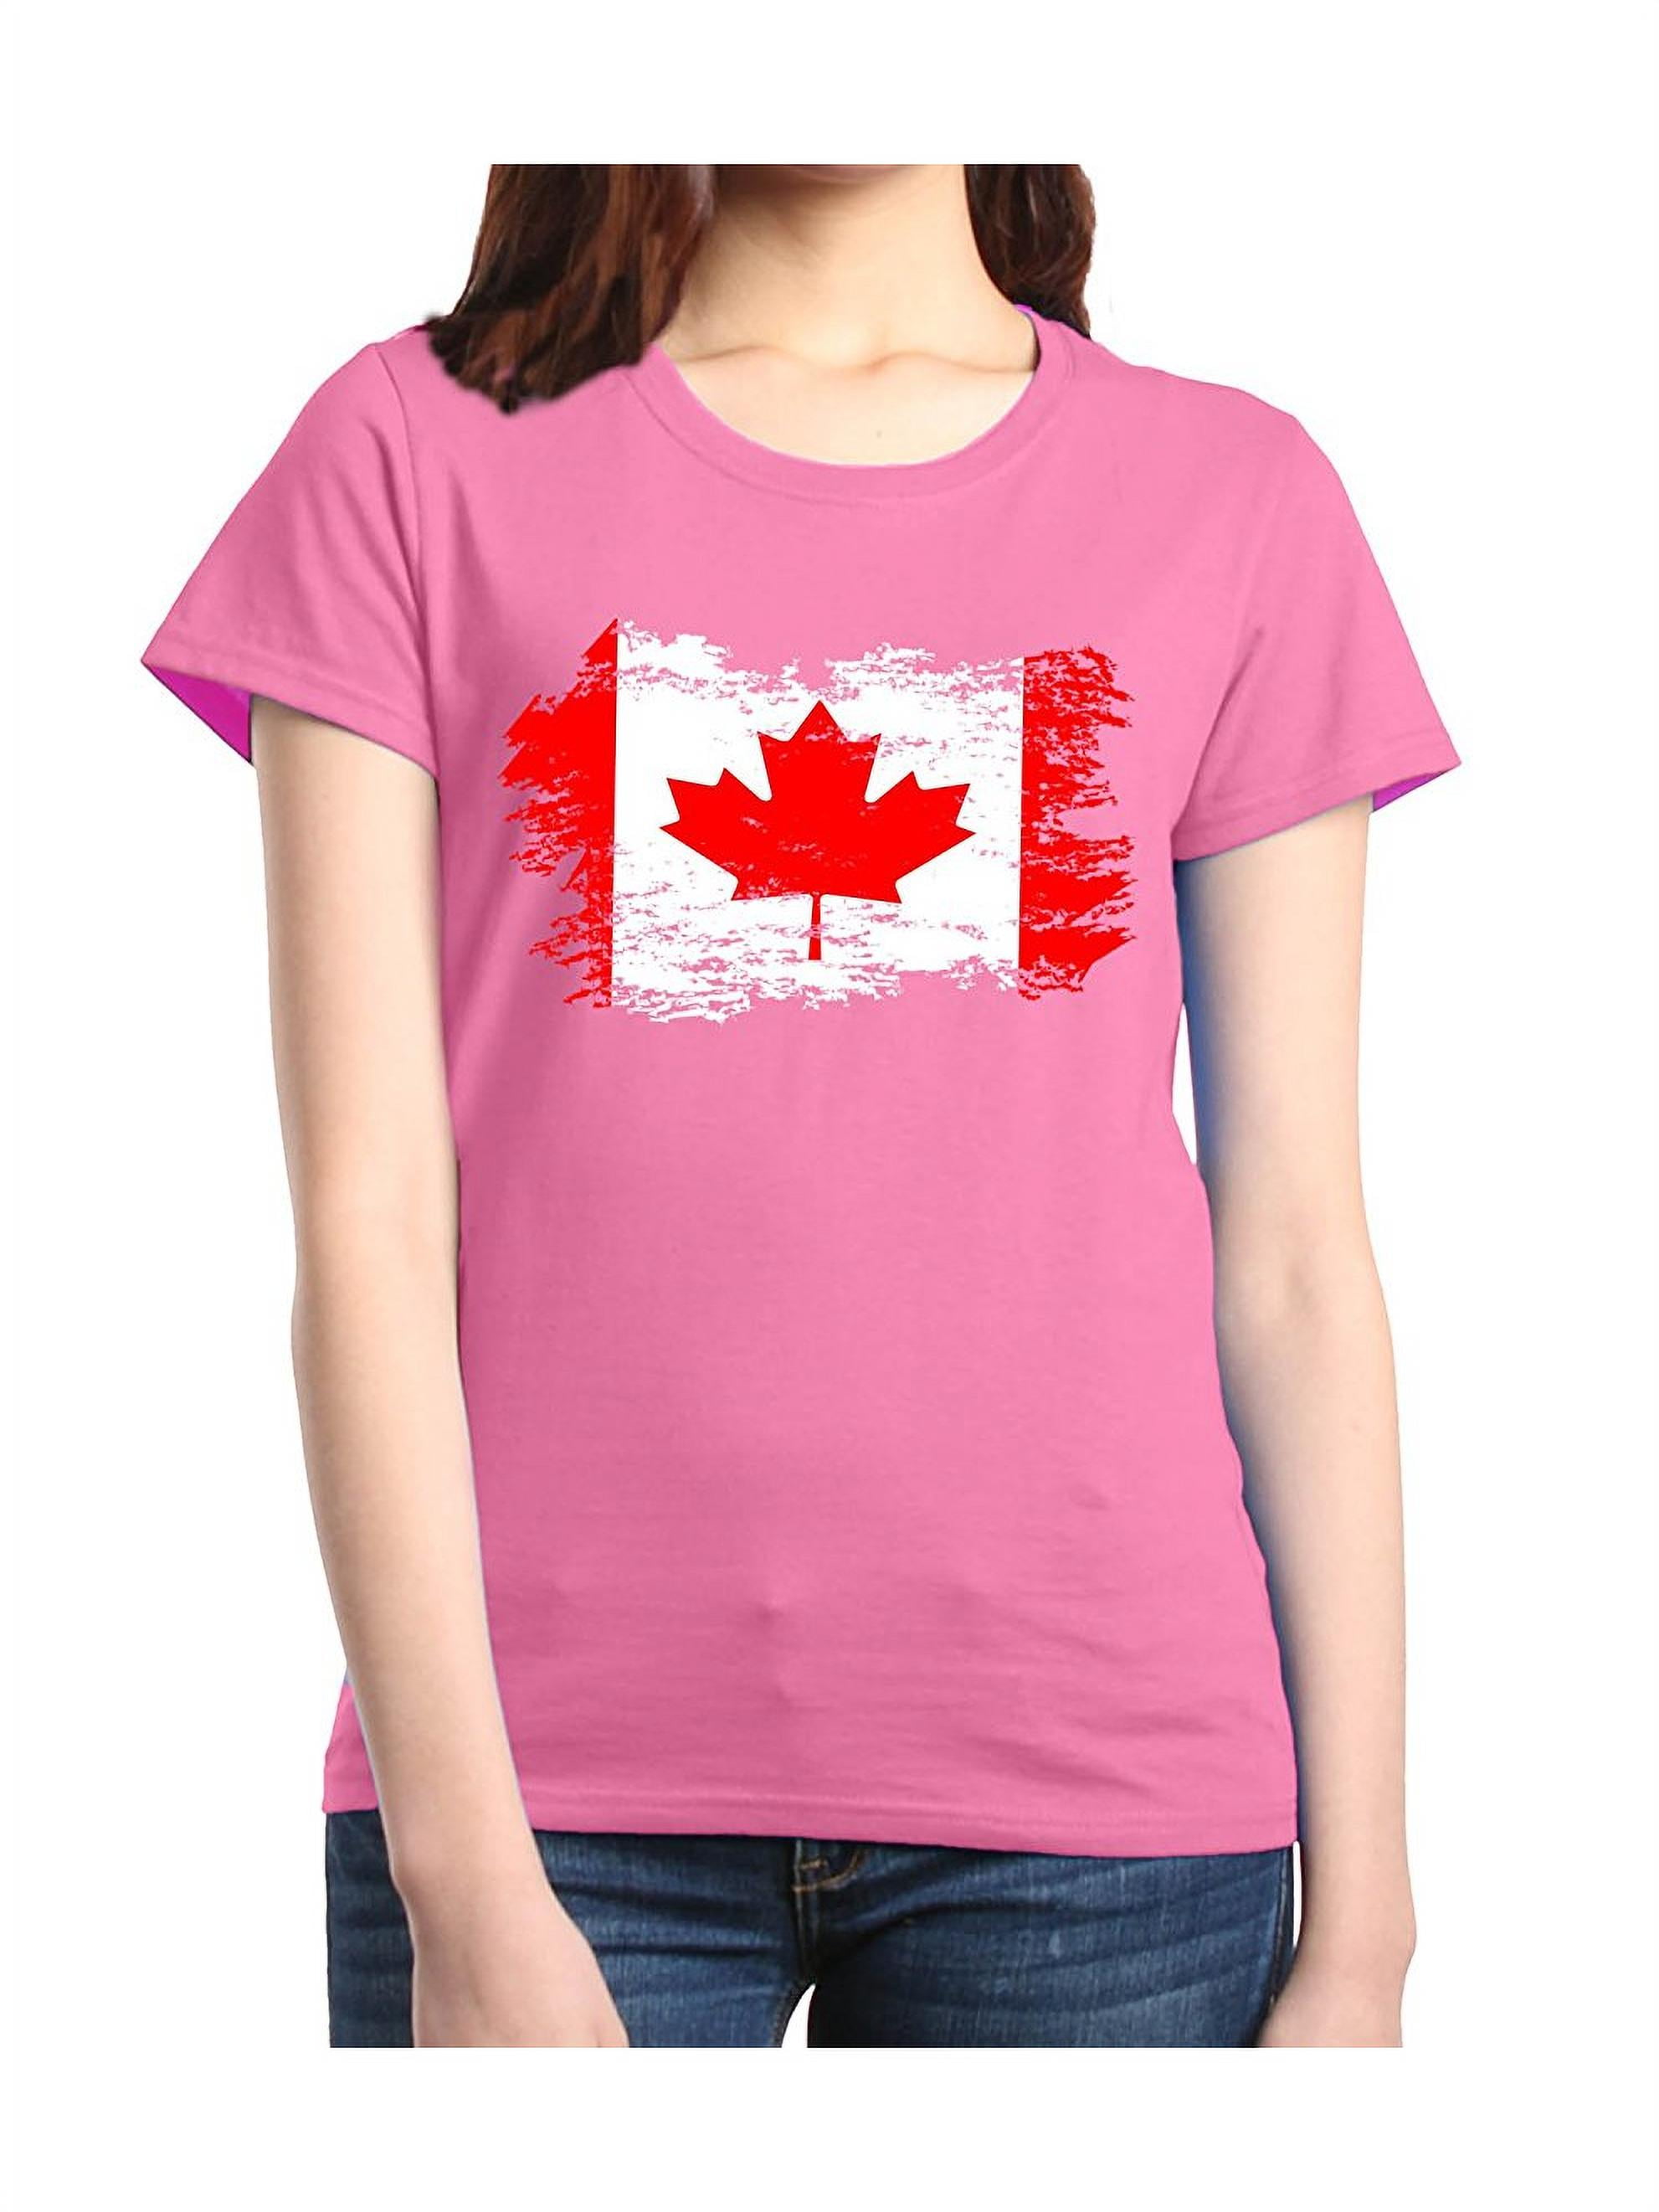 MmF - Women's T-Shirt Short Sleeve, up to Women Size 3XL - Canada Flag -  Walmart.com